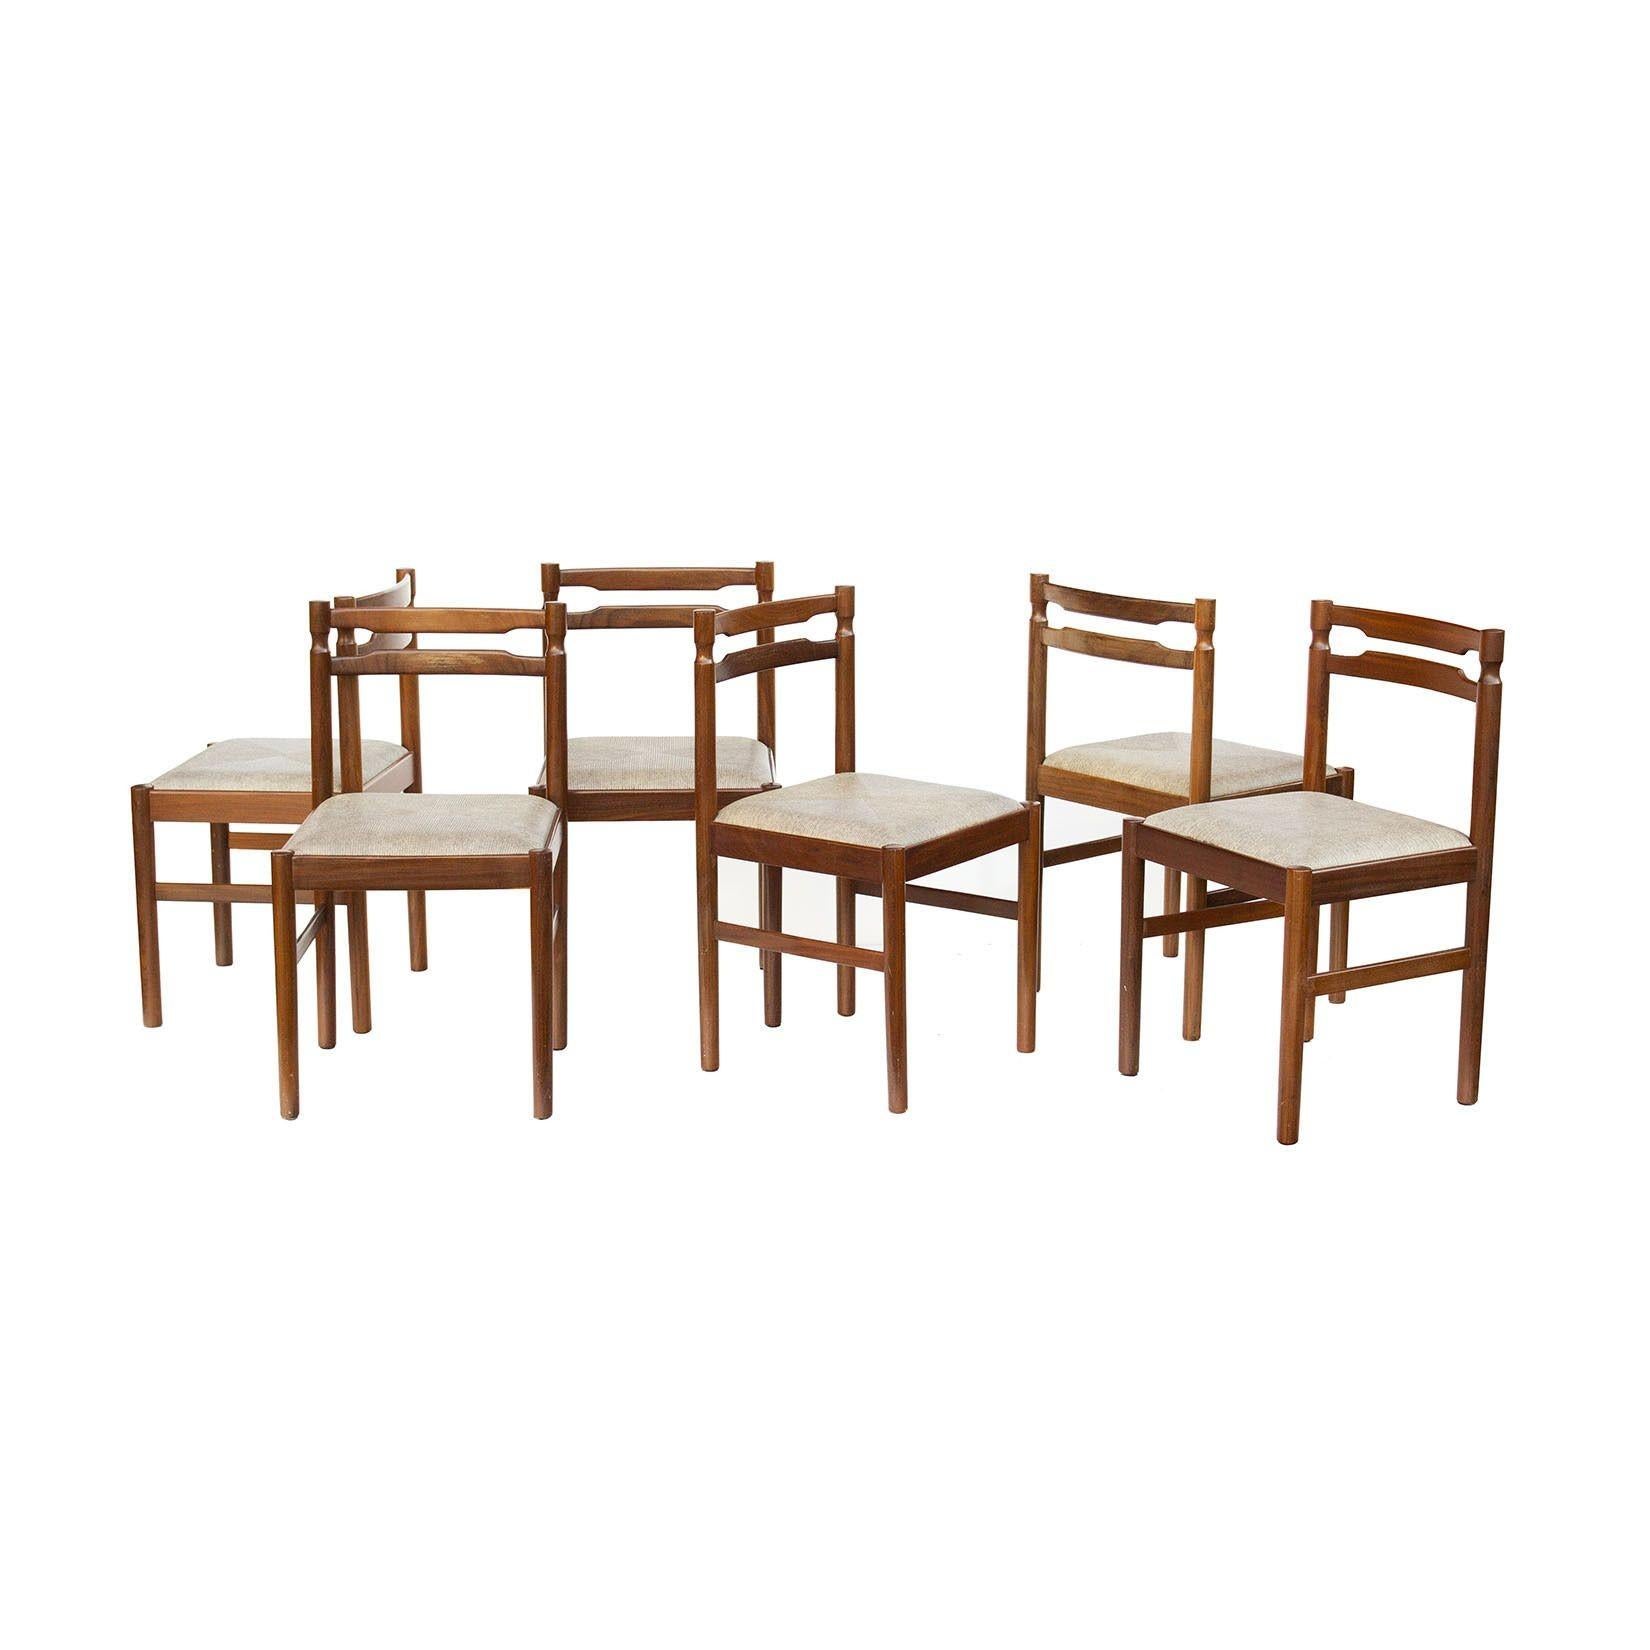 Skandinavien, 1960er Jahre
Satz von sechs skandinavischen Esszimmerstühlen aus Teakholz oder Palisanderholz. Es handelt sich um einen schön gedrechselten Satz in satten Holztönen. Die Polsterung besteht aus einem strukturierten, neutralen,